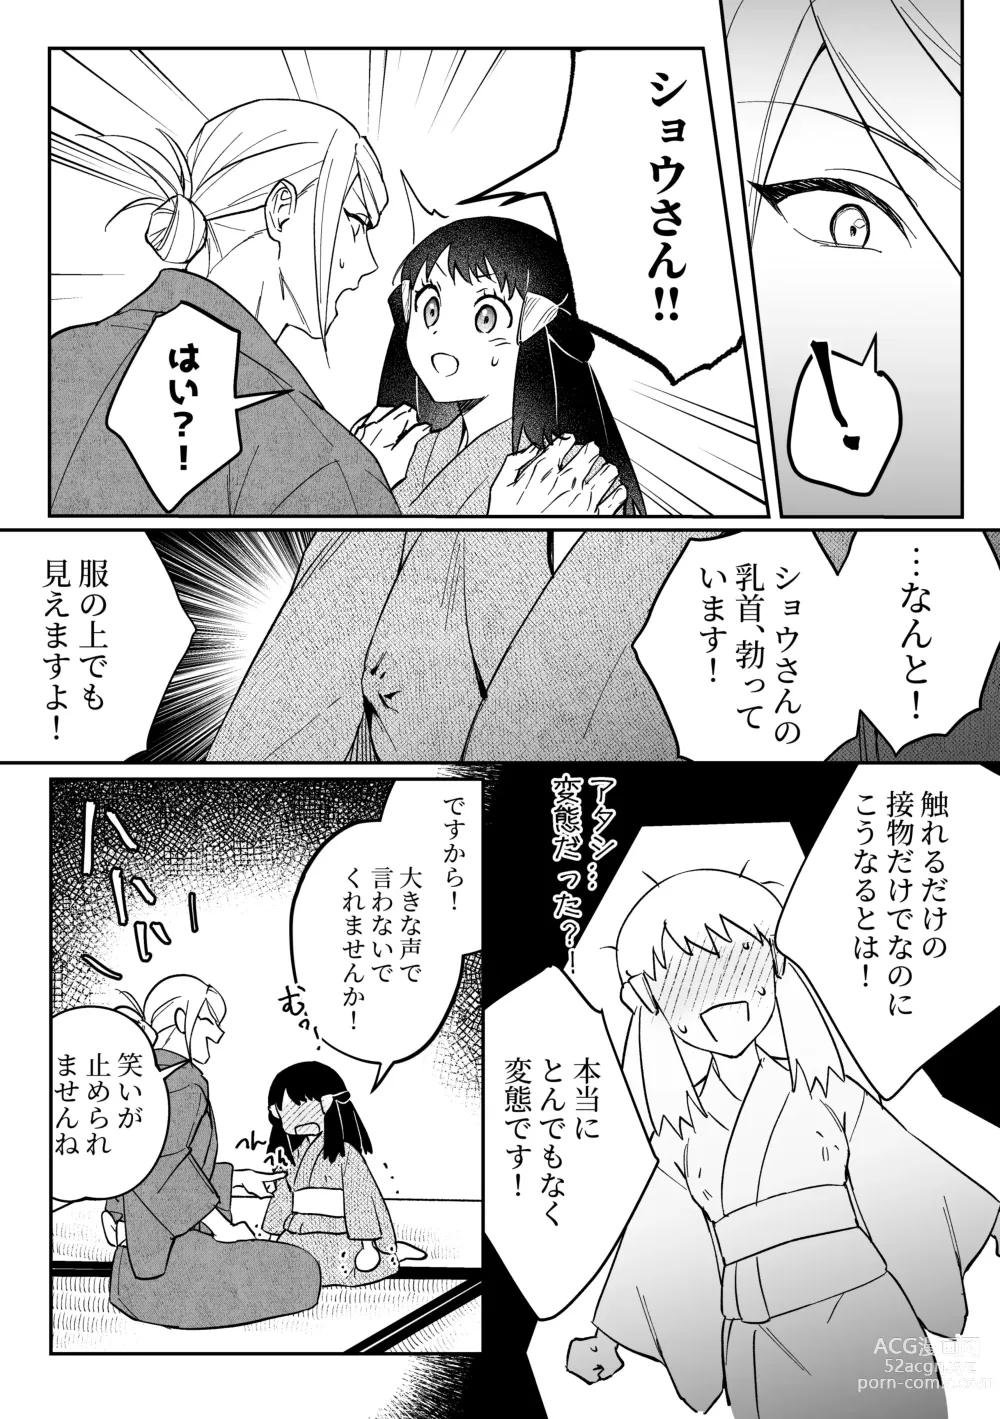 Page 3 of doujinshi Chikubi Karakau Volo Shou Manga